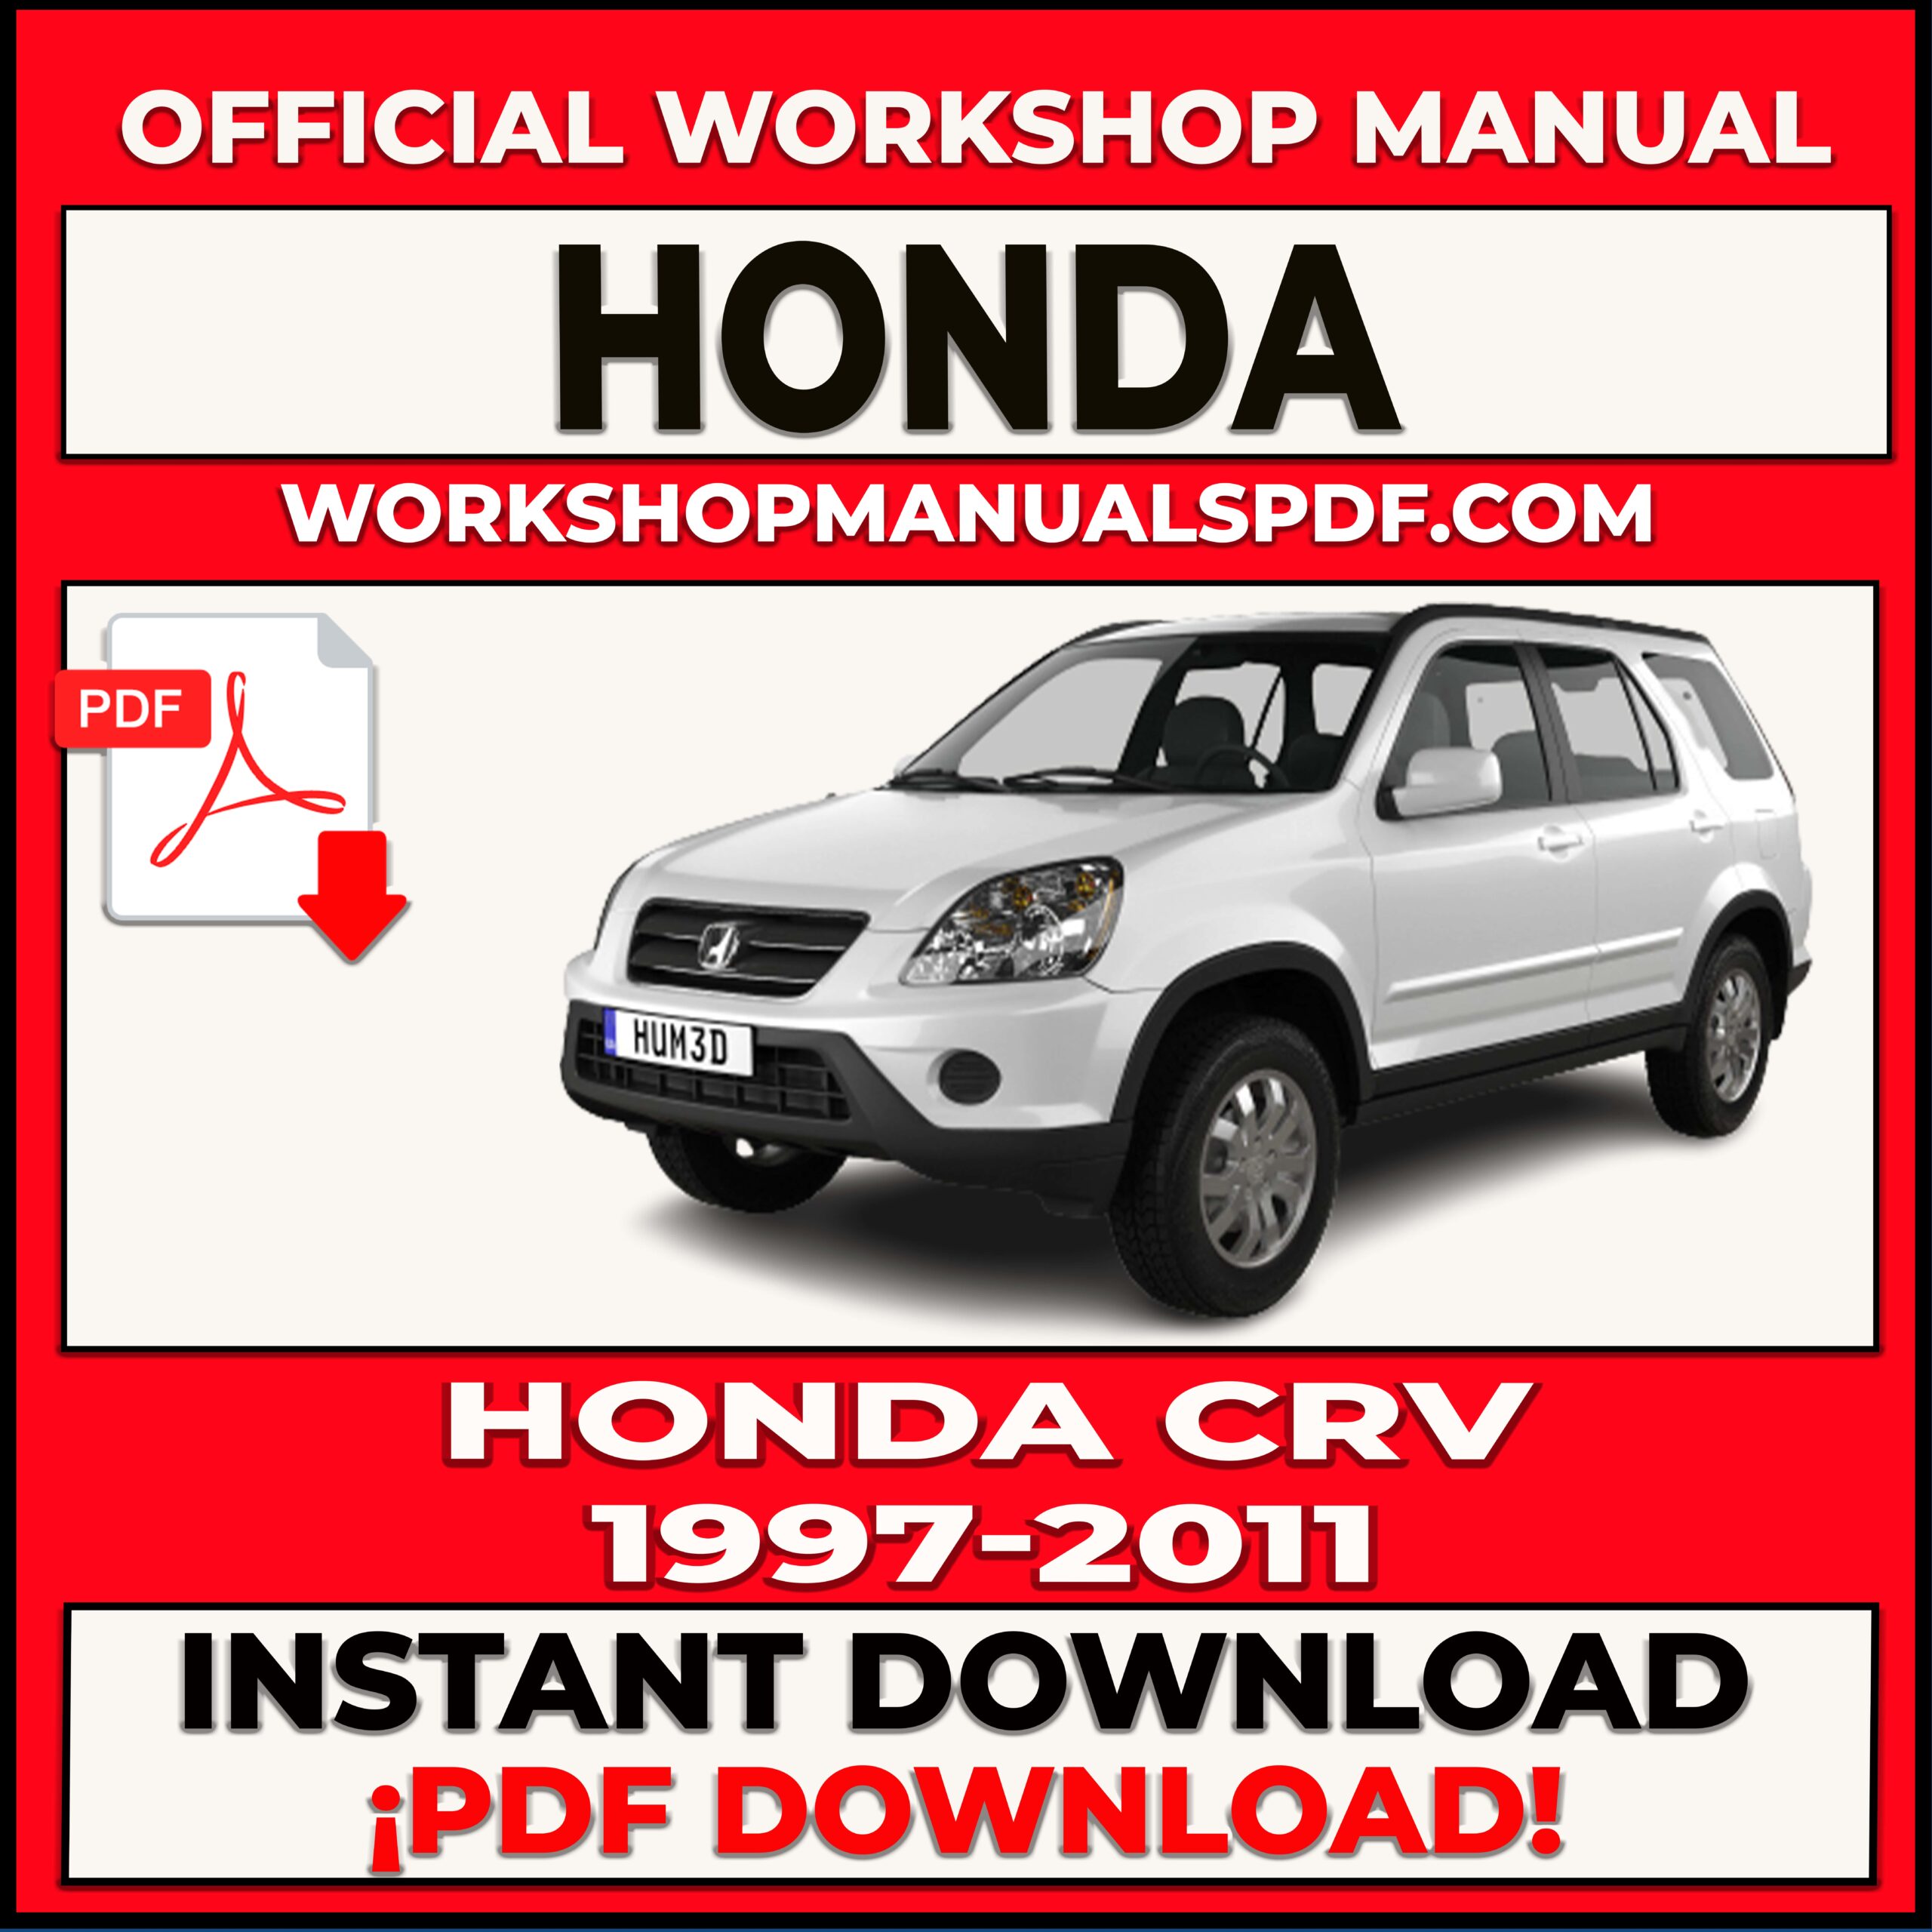 Honda CRV 1997-2011 Workshop Repair Manual